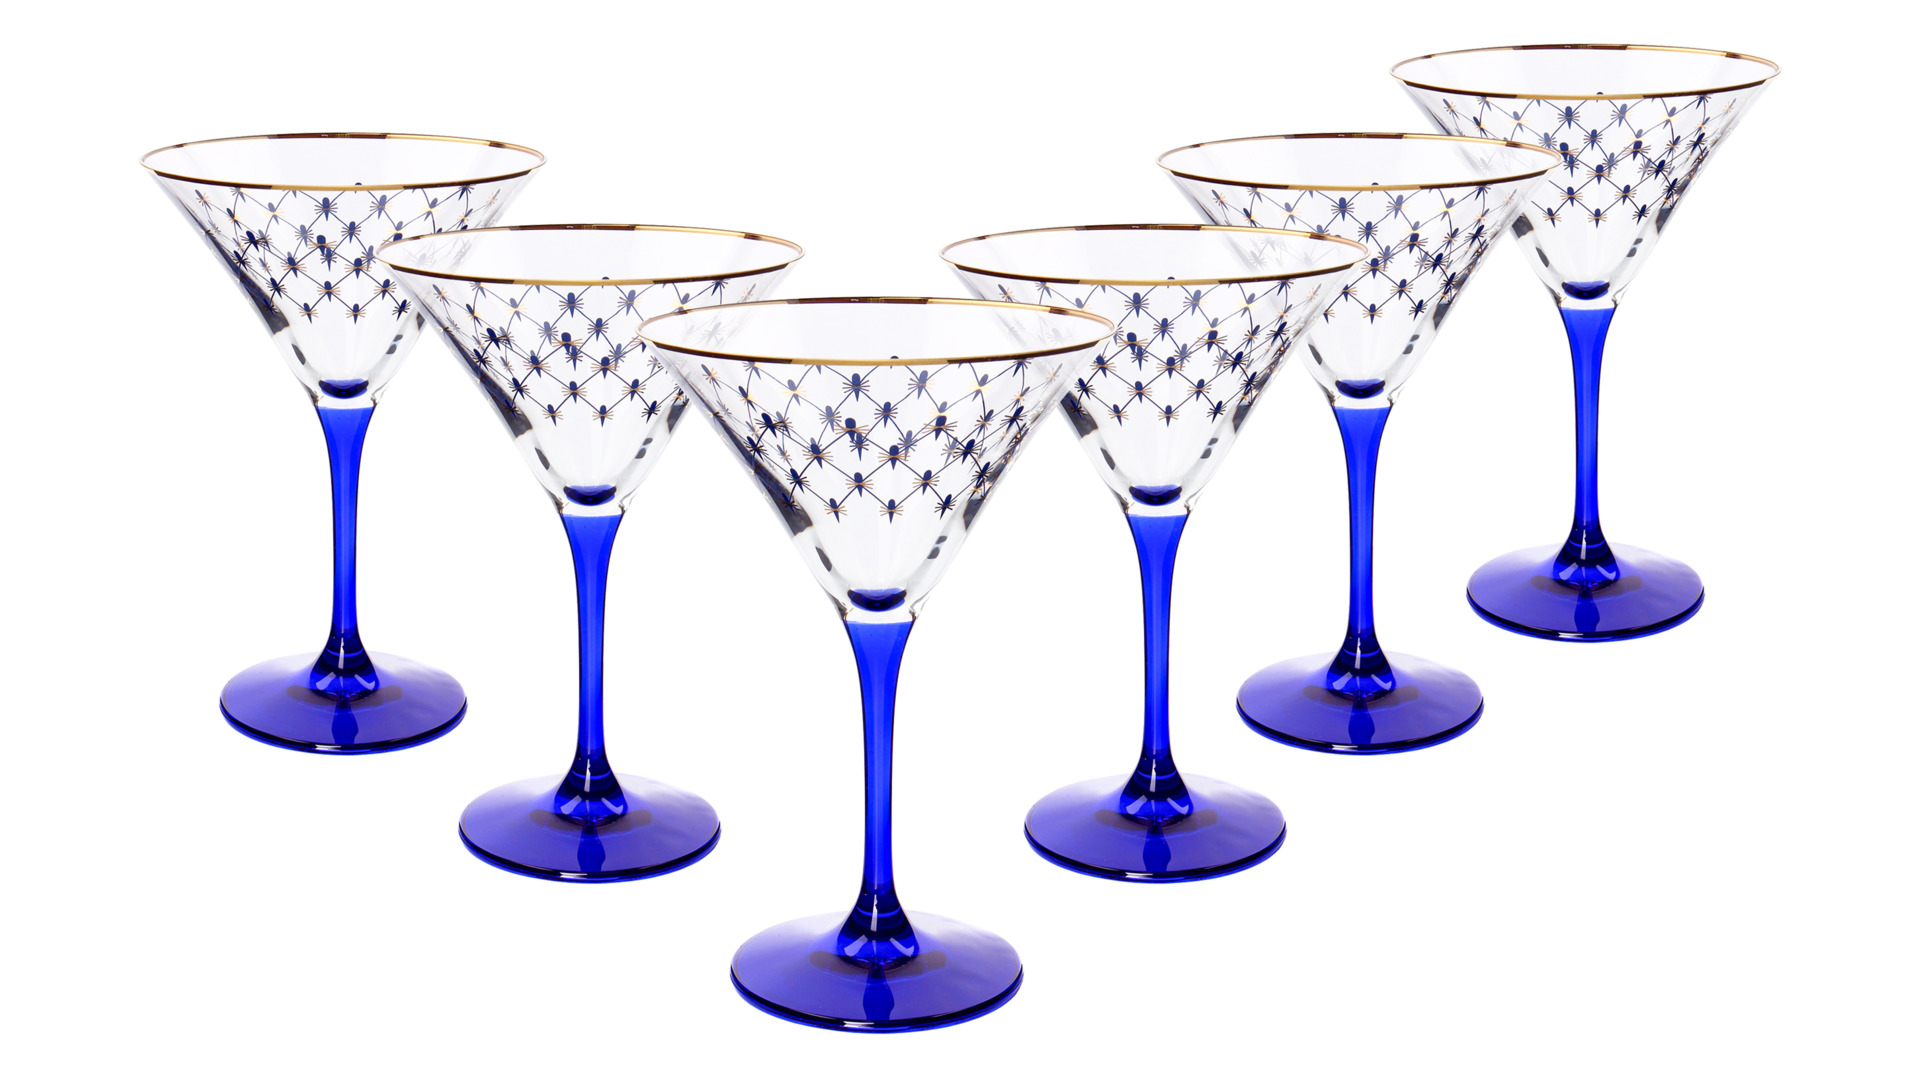 Набор бокалов для мартини ИФЗ Кобальтовая сетка 150 мл, 6 шт, стеклоСтекло